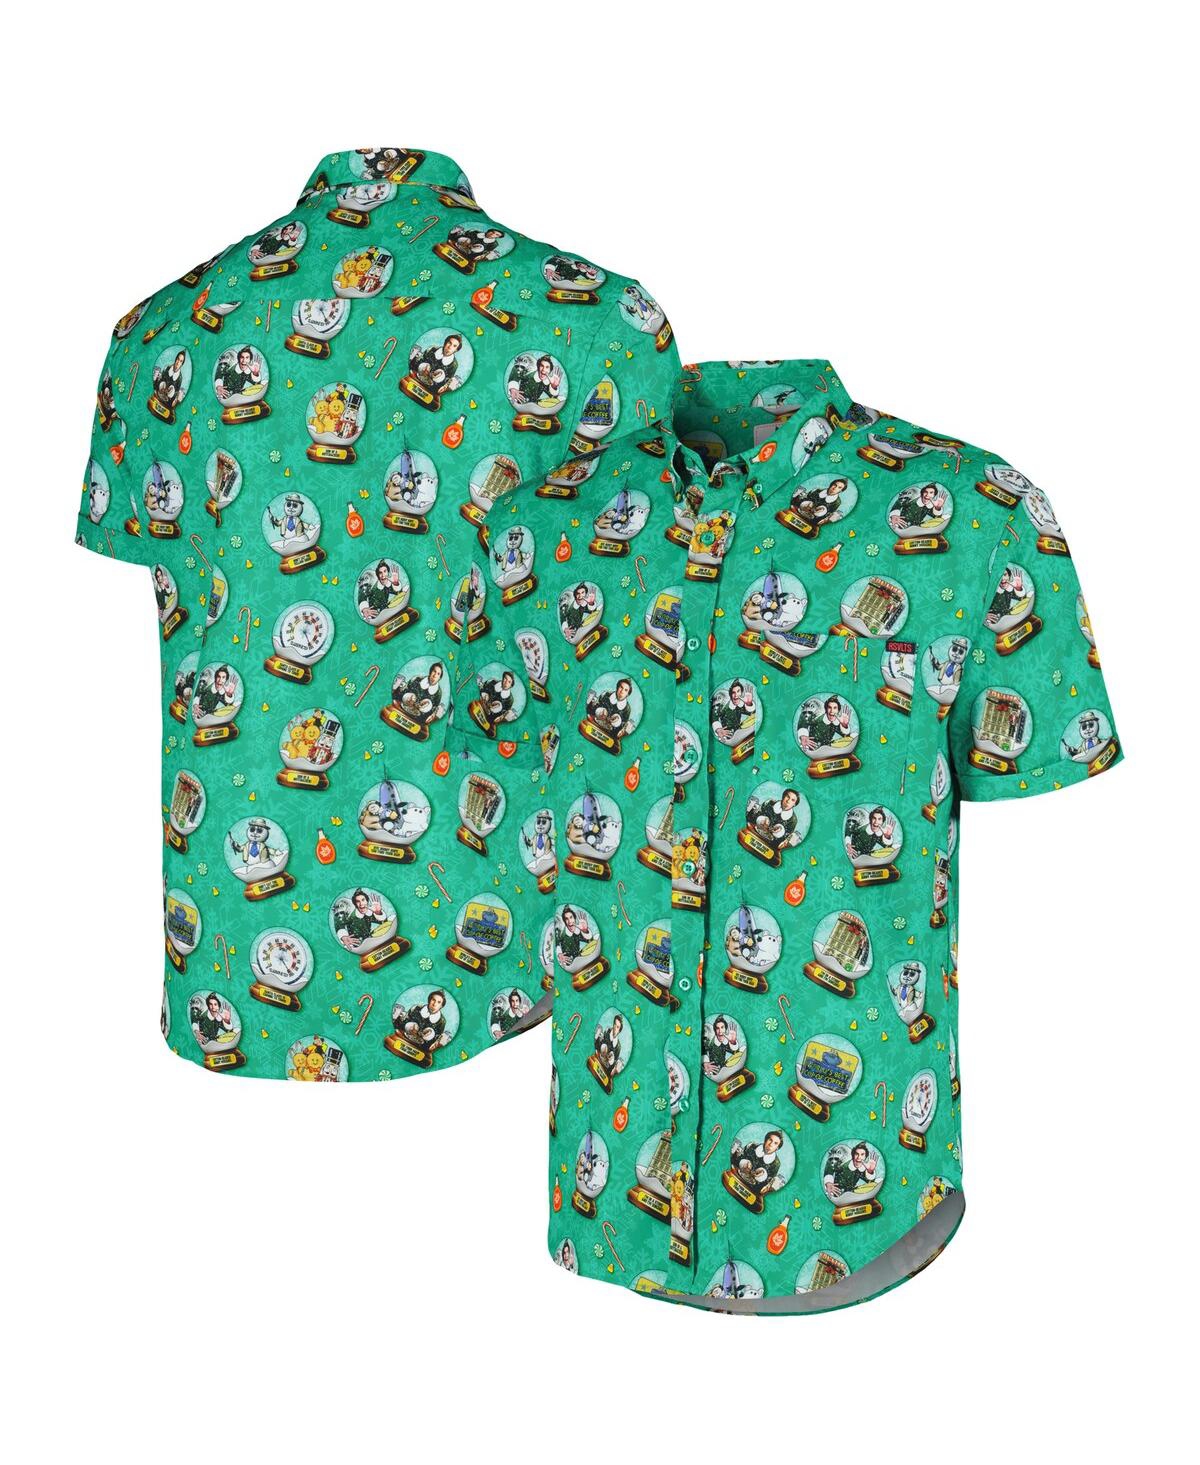 Men's and Women's Rsvlts Green Elf Son of a Nutcracker KunuflexÂ Button-Down Shirt - Green